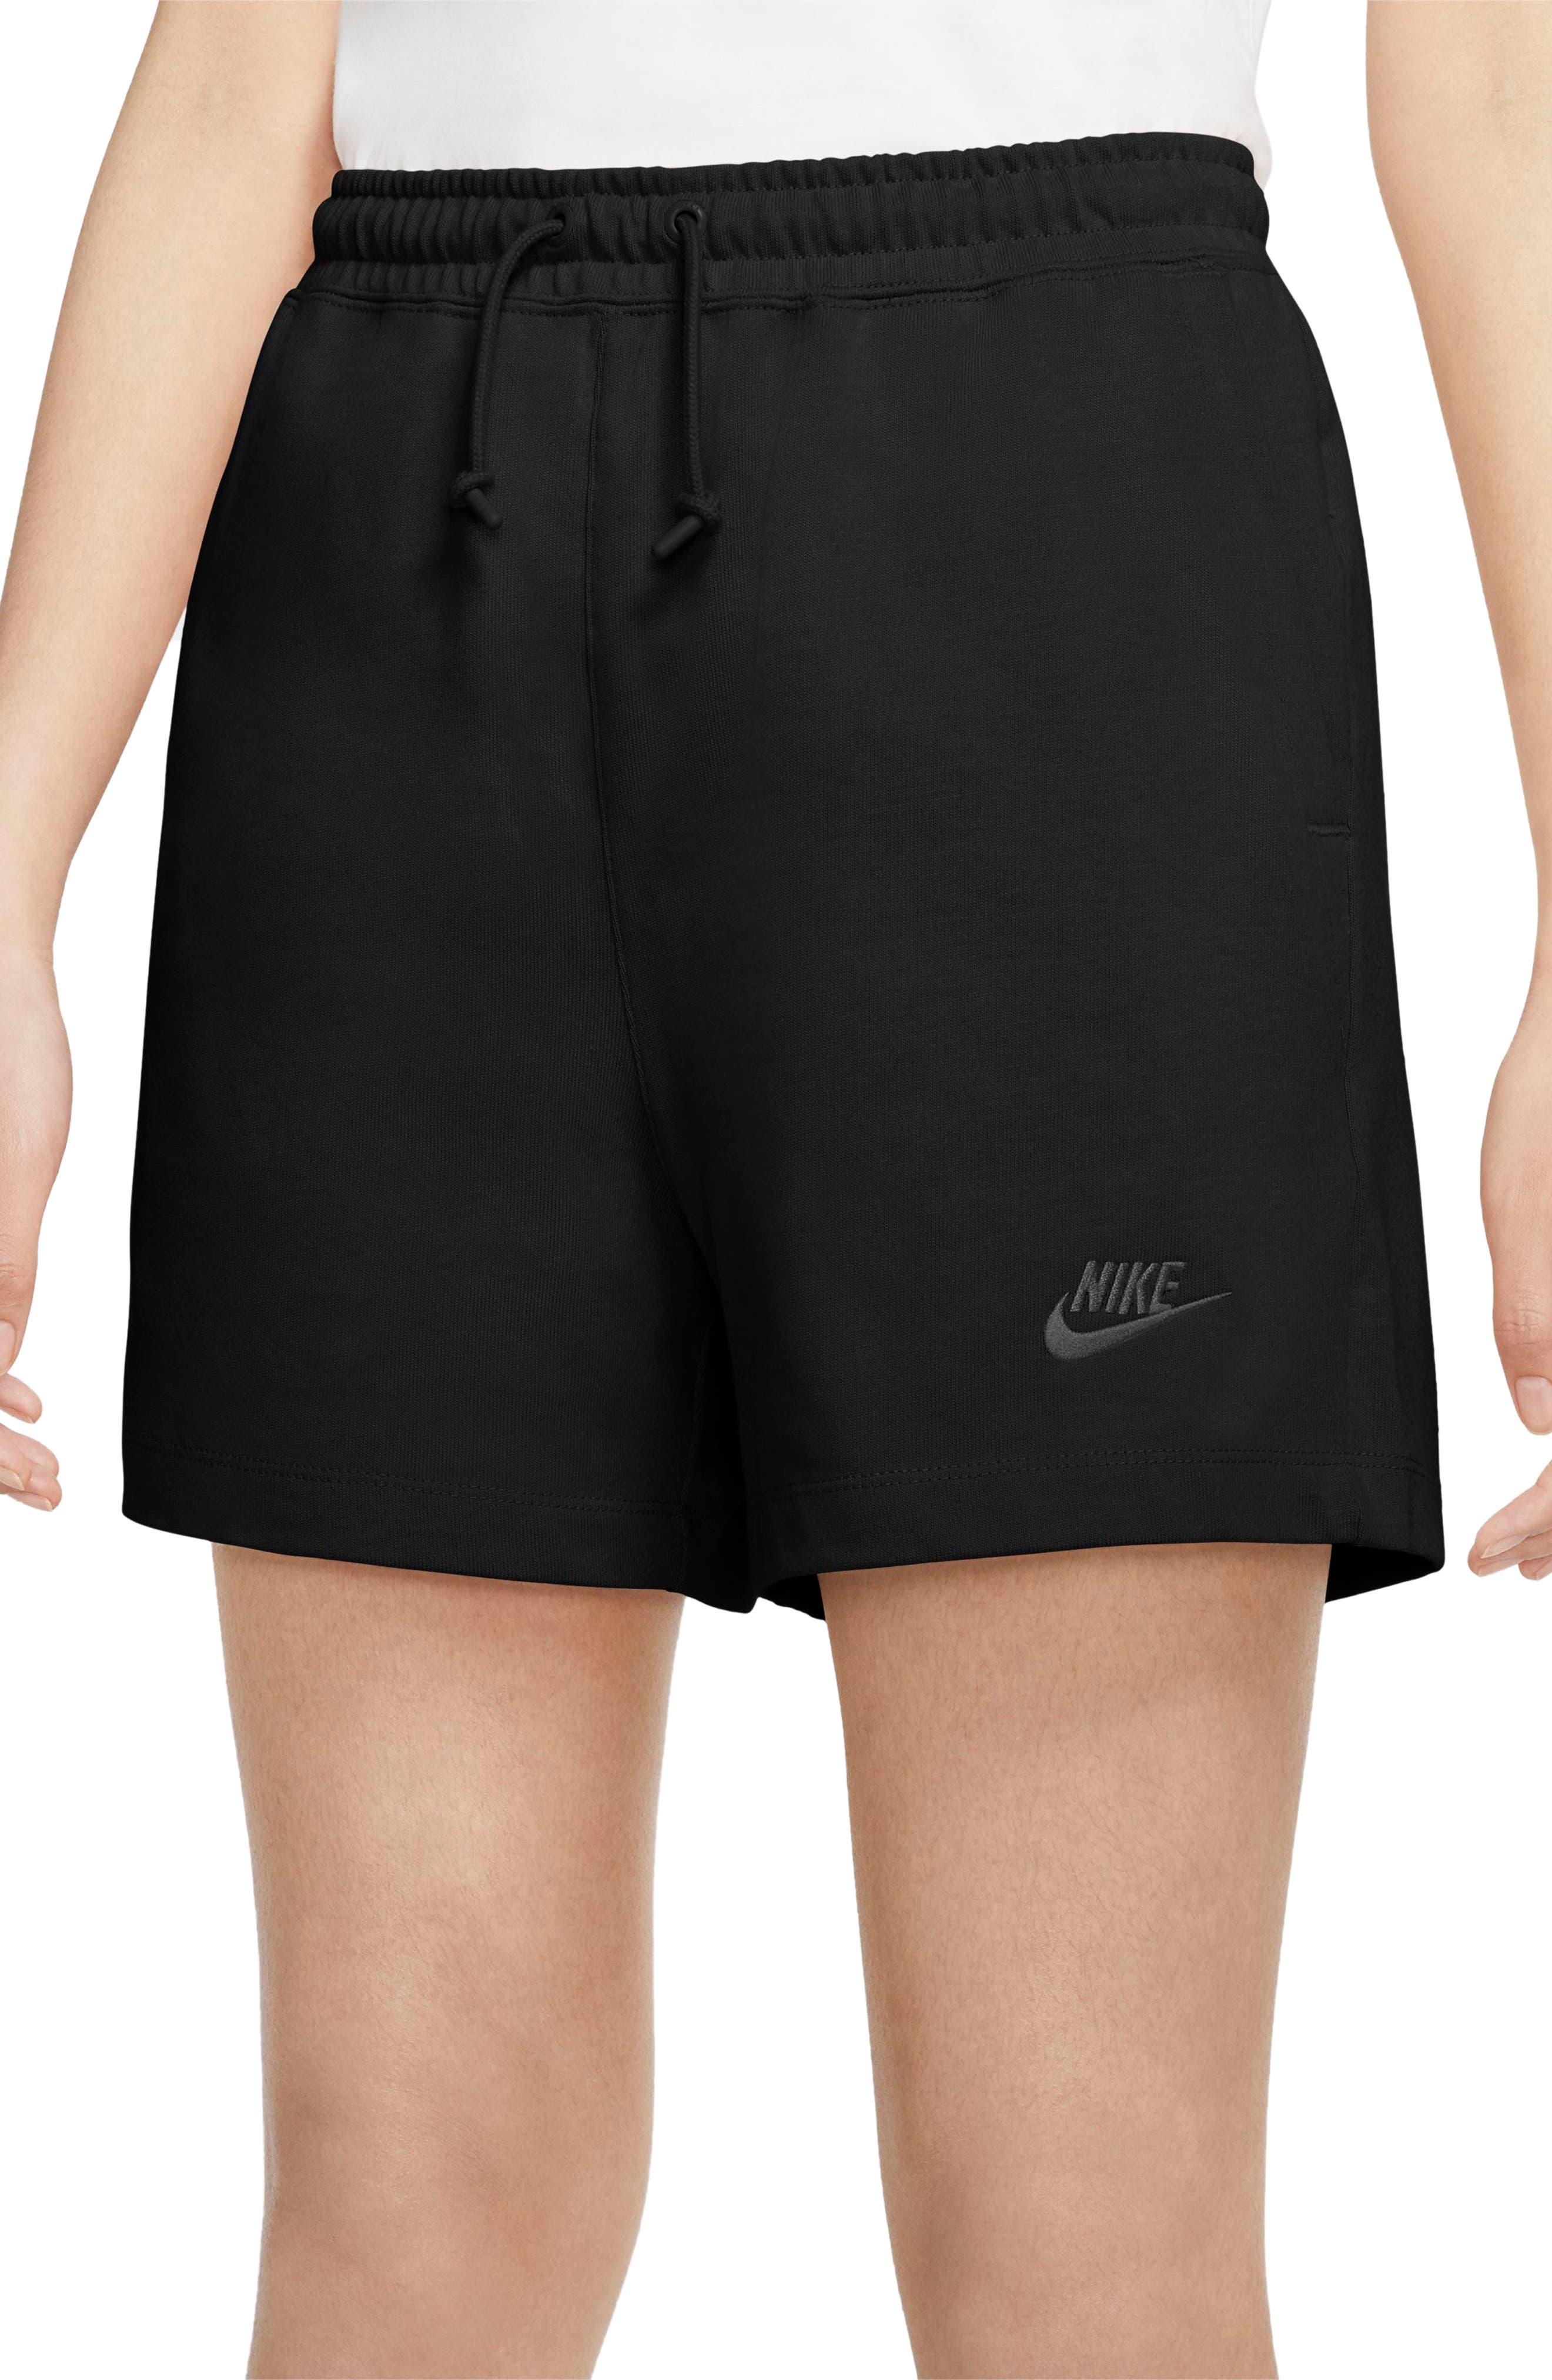 nike womens jersey shorts